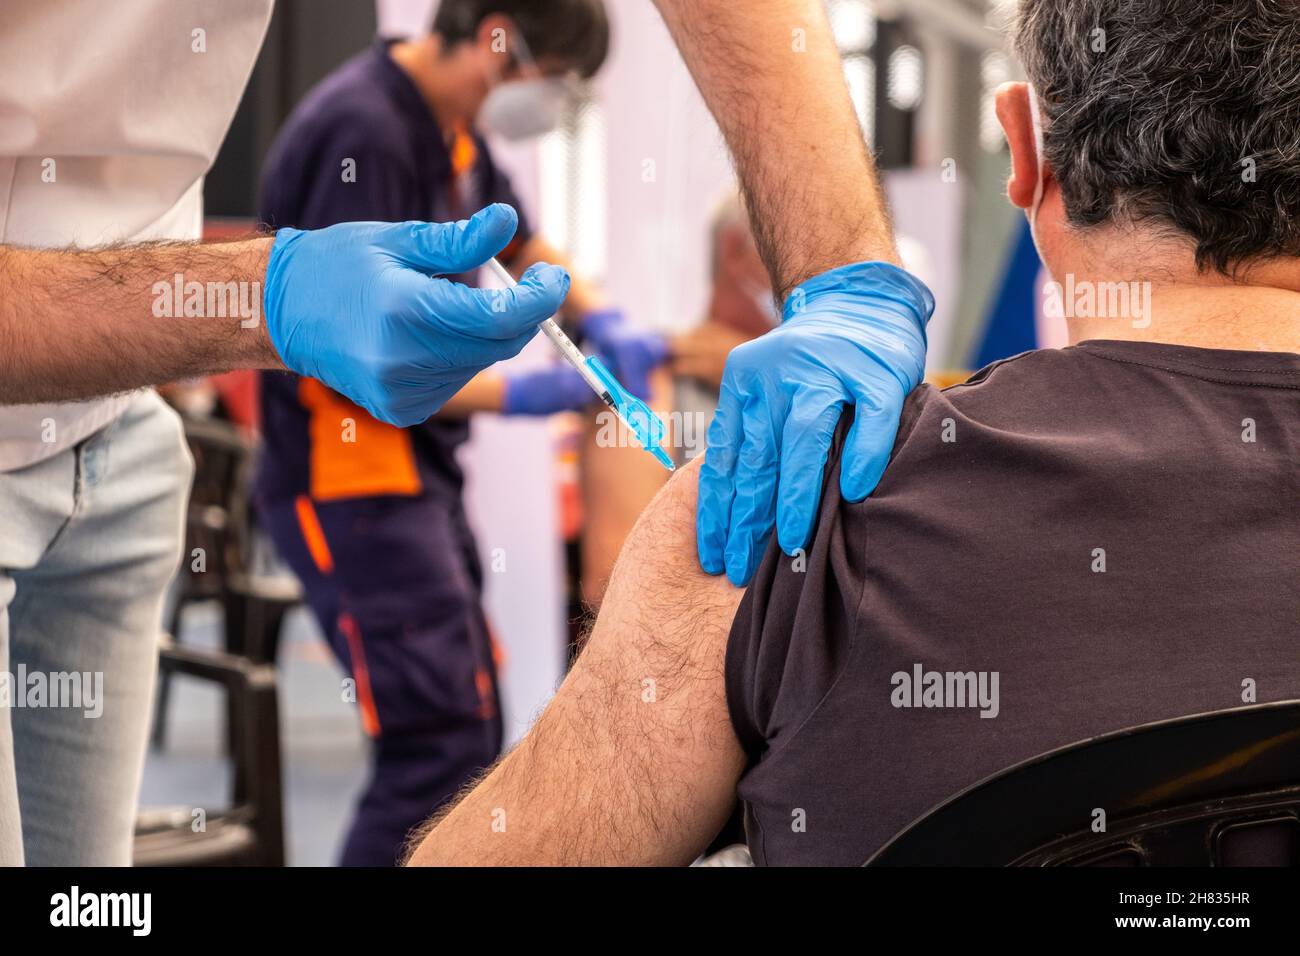 Valencia, Spanien; 6th. april 2021: Medizinisches Fachpersonal spritzt einem Patienten in einem Impfzentrum den Antikovid-Impfstoff ein. Kovidhemmende Impfung ca. Stockfoto